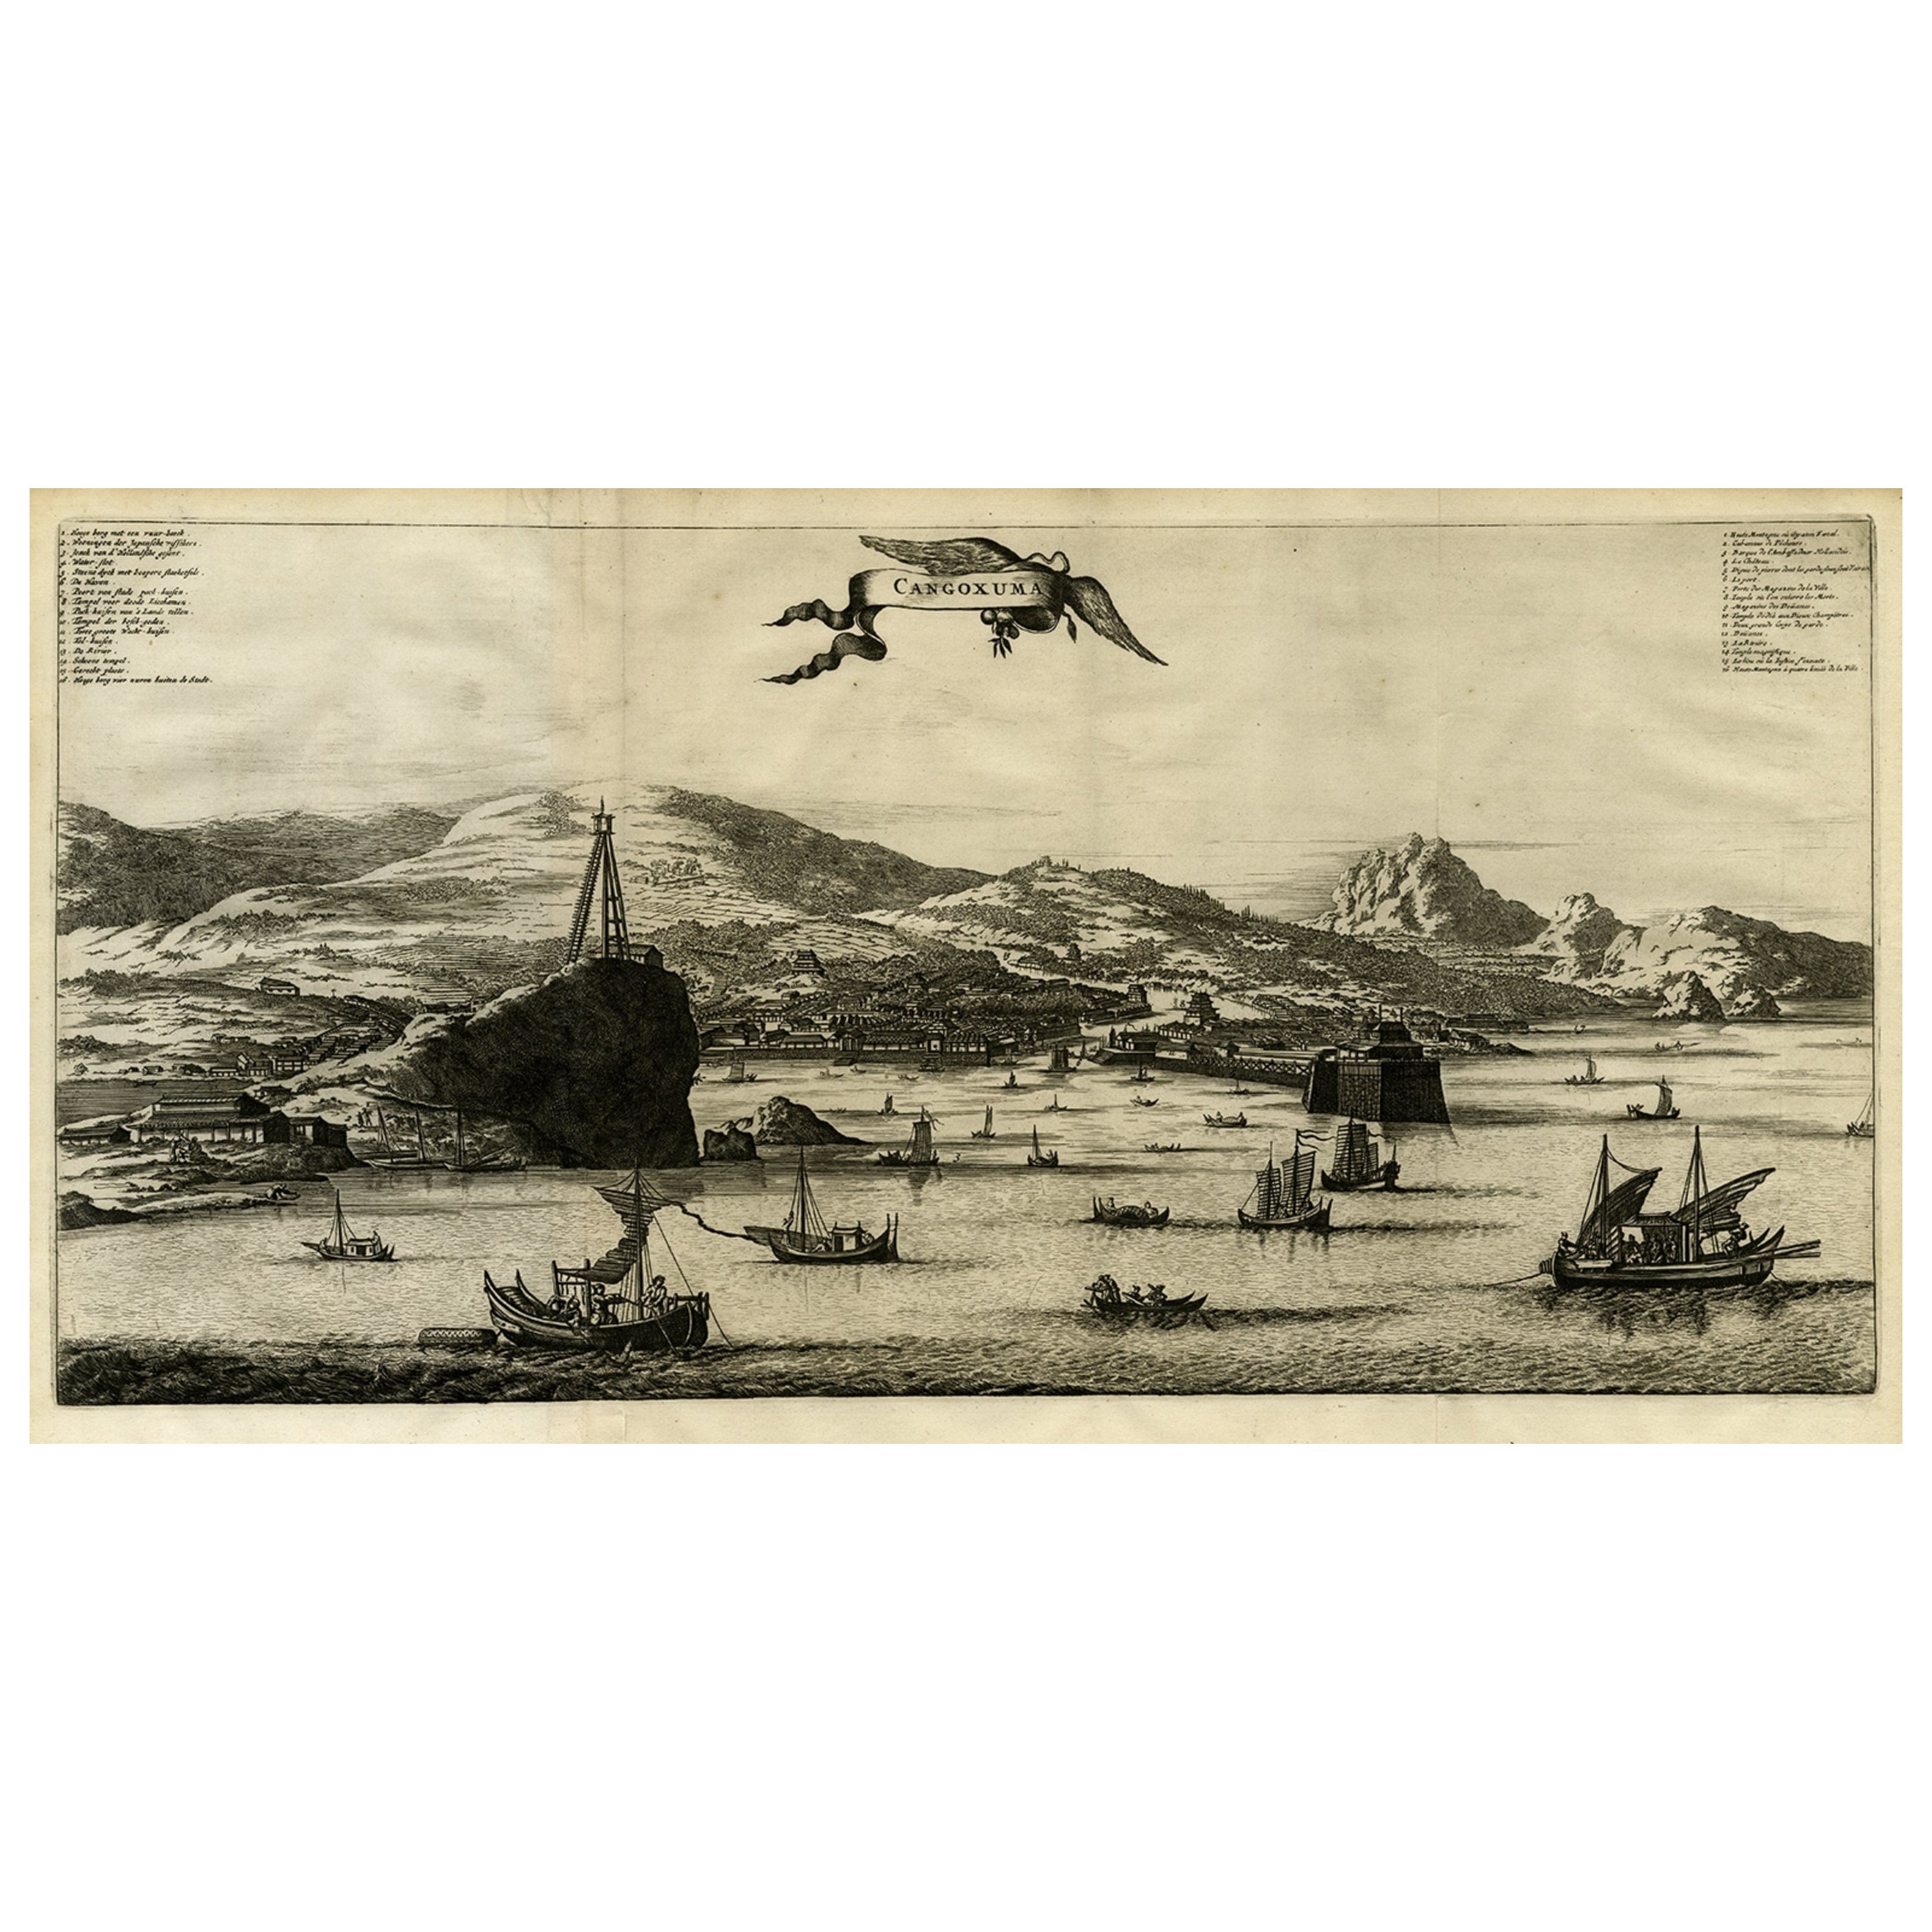 Original Old Engraving, Bird's Eye View of Cangoxuma (Kagoshima) in Japan, 1669